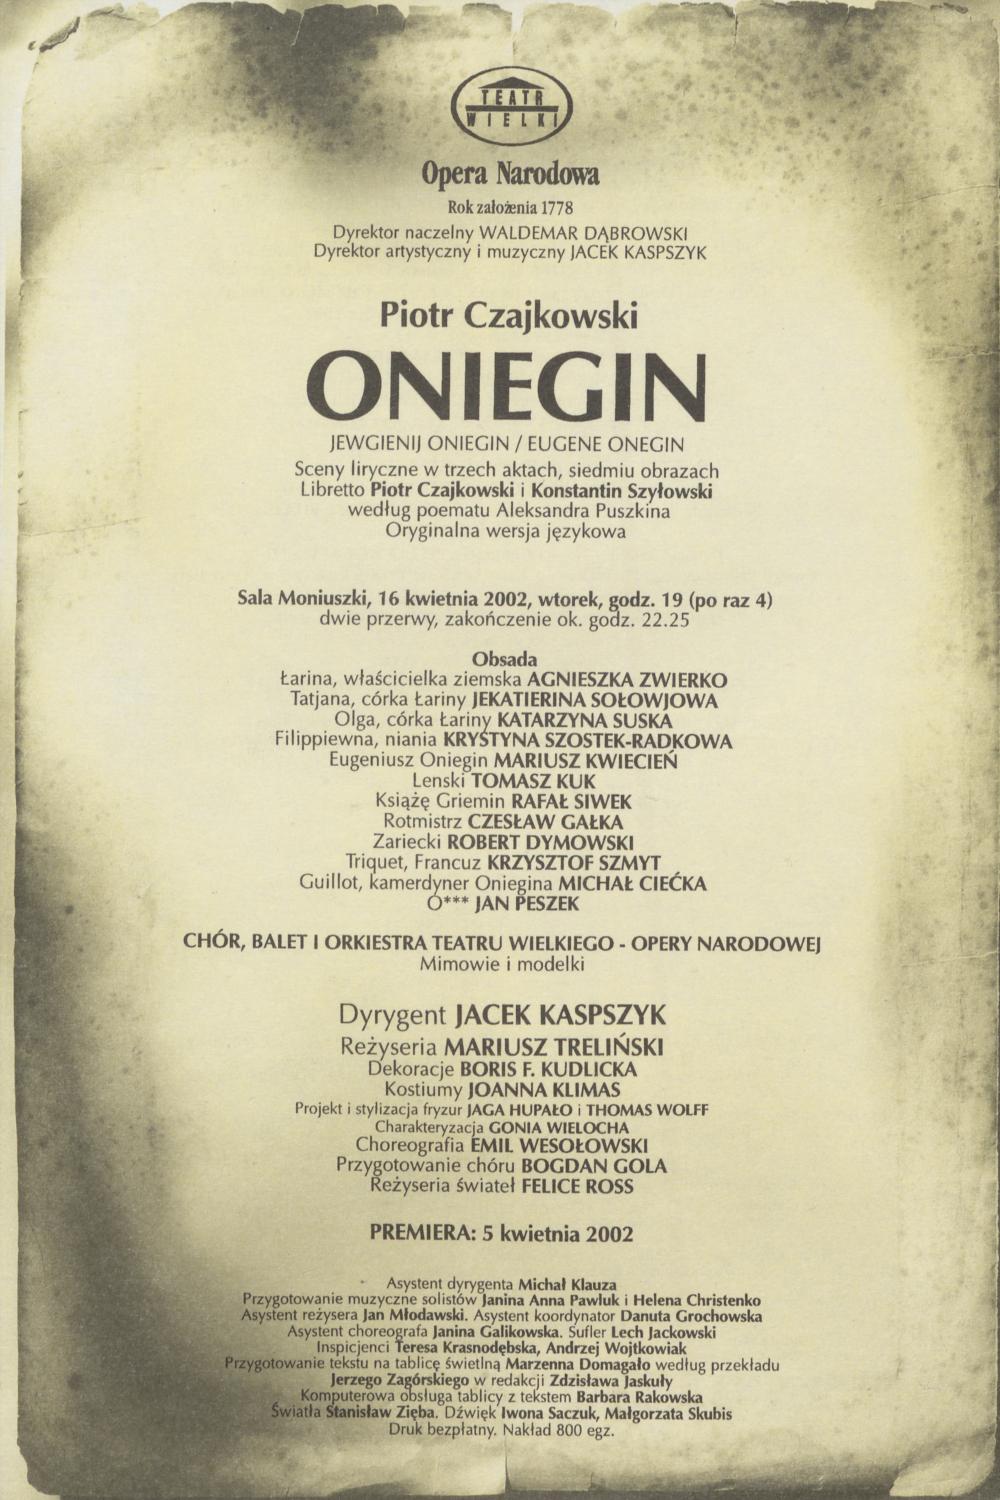 Wkładka obsadowa „Oniegin” Piotr Czajkowski 16-04-2002